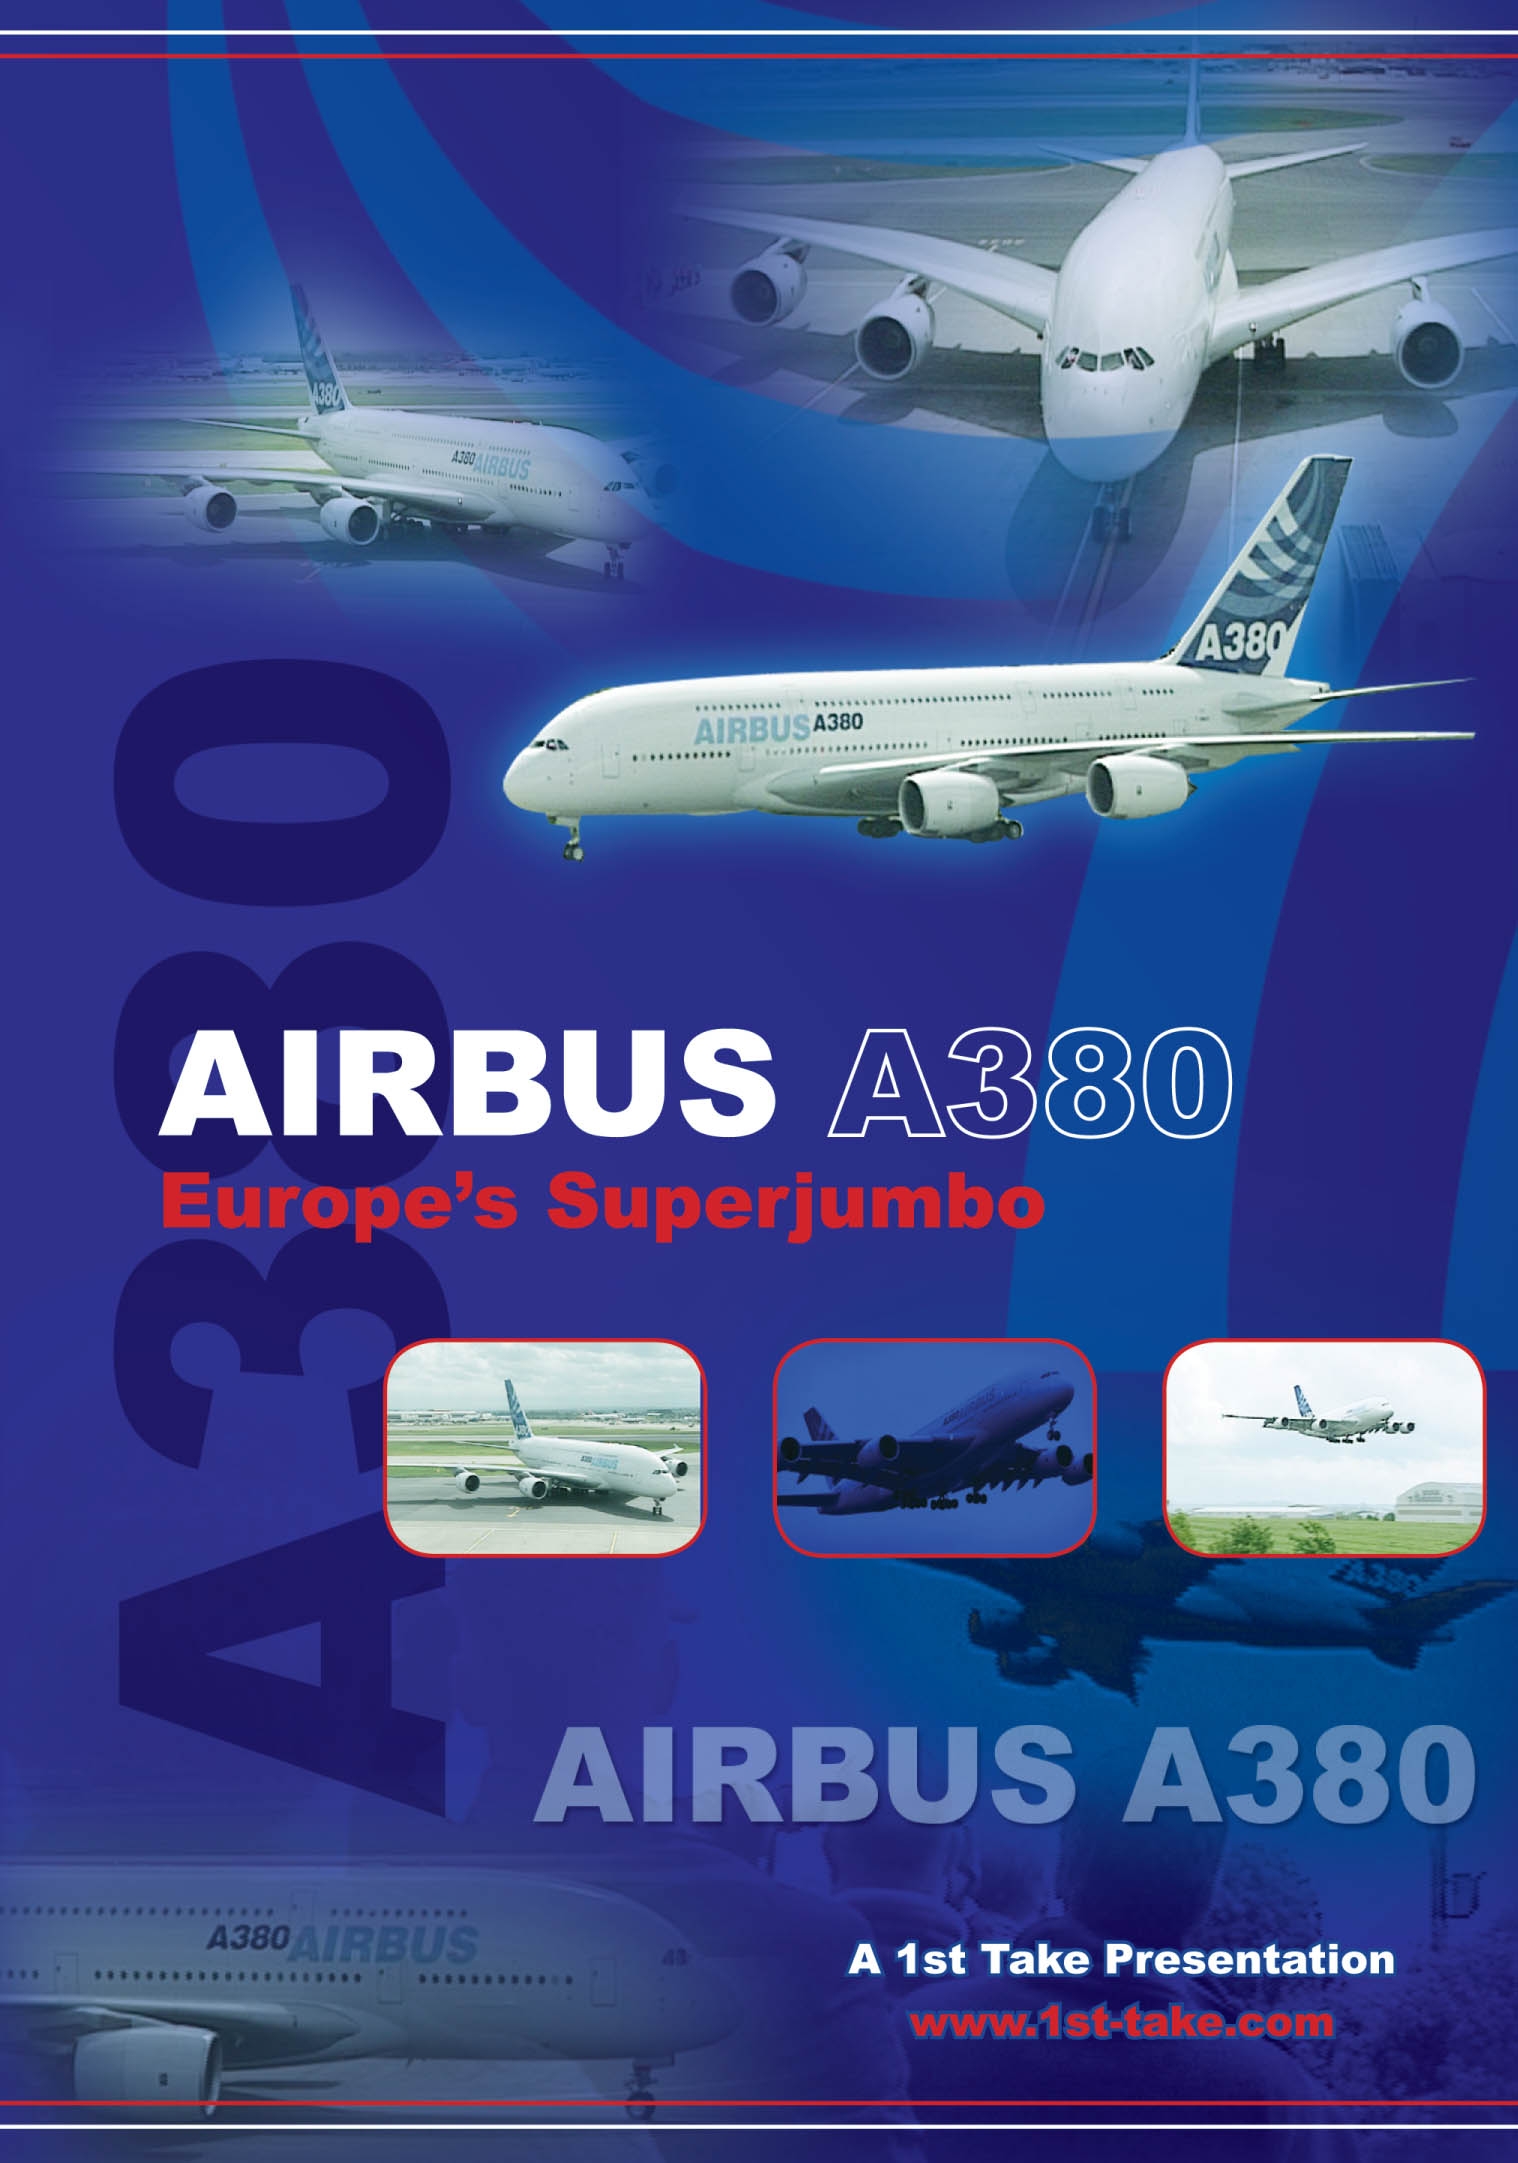 Airbus A380 - Europe's Super Jumbo